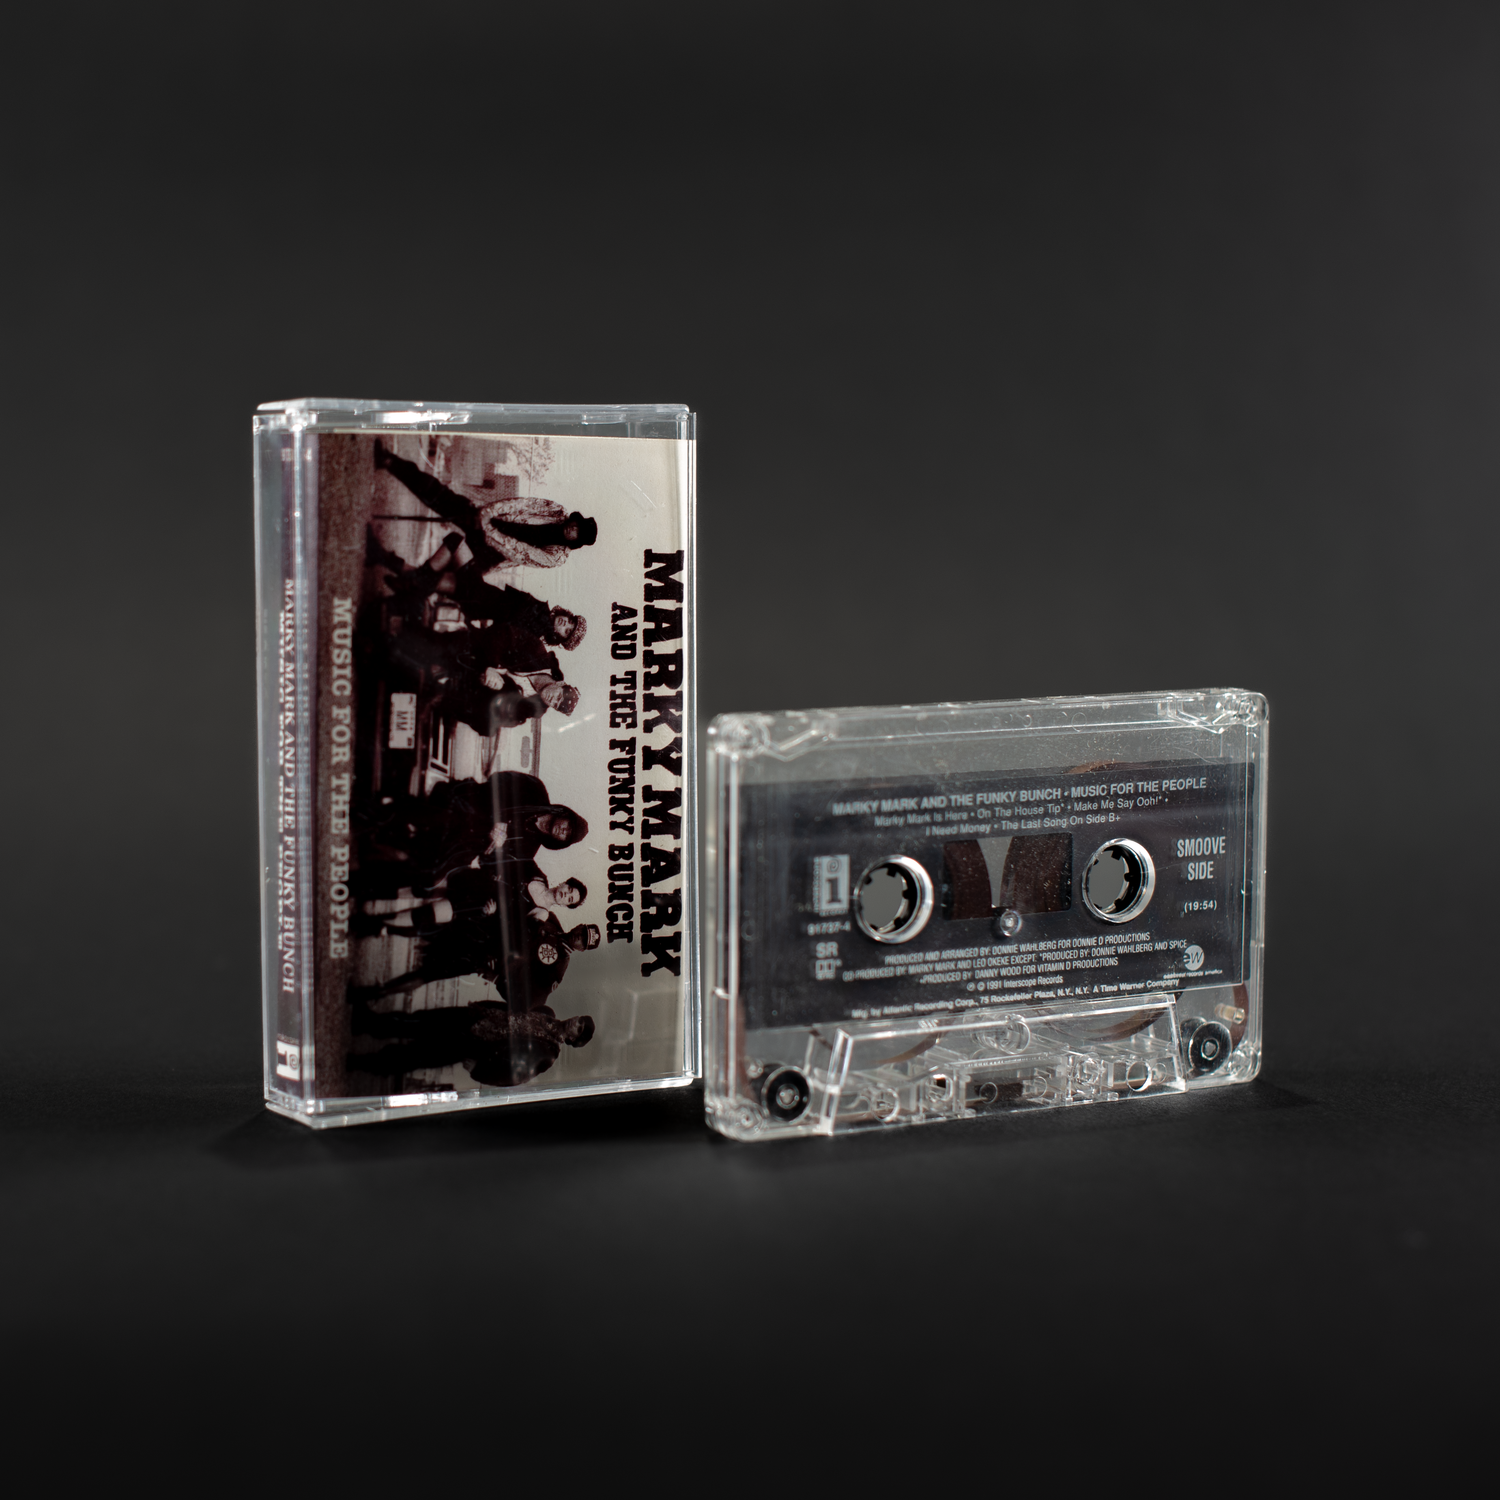 Música para el pueblo (cassette vintage)